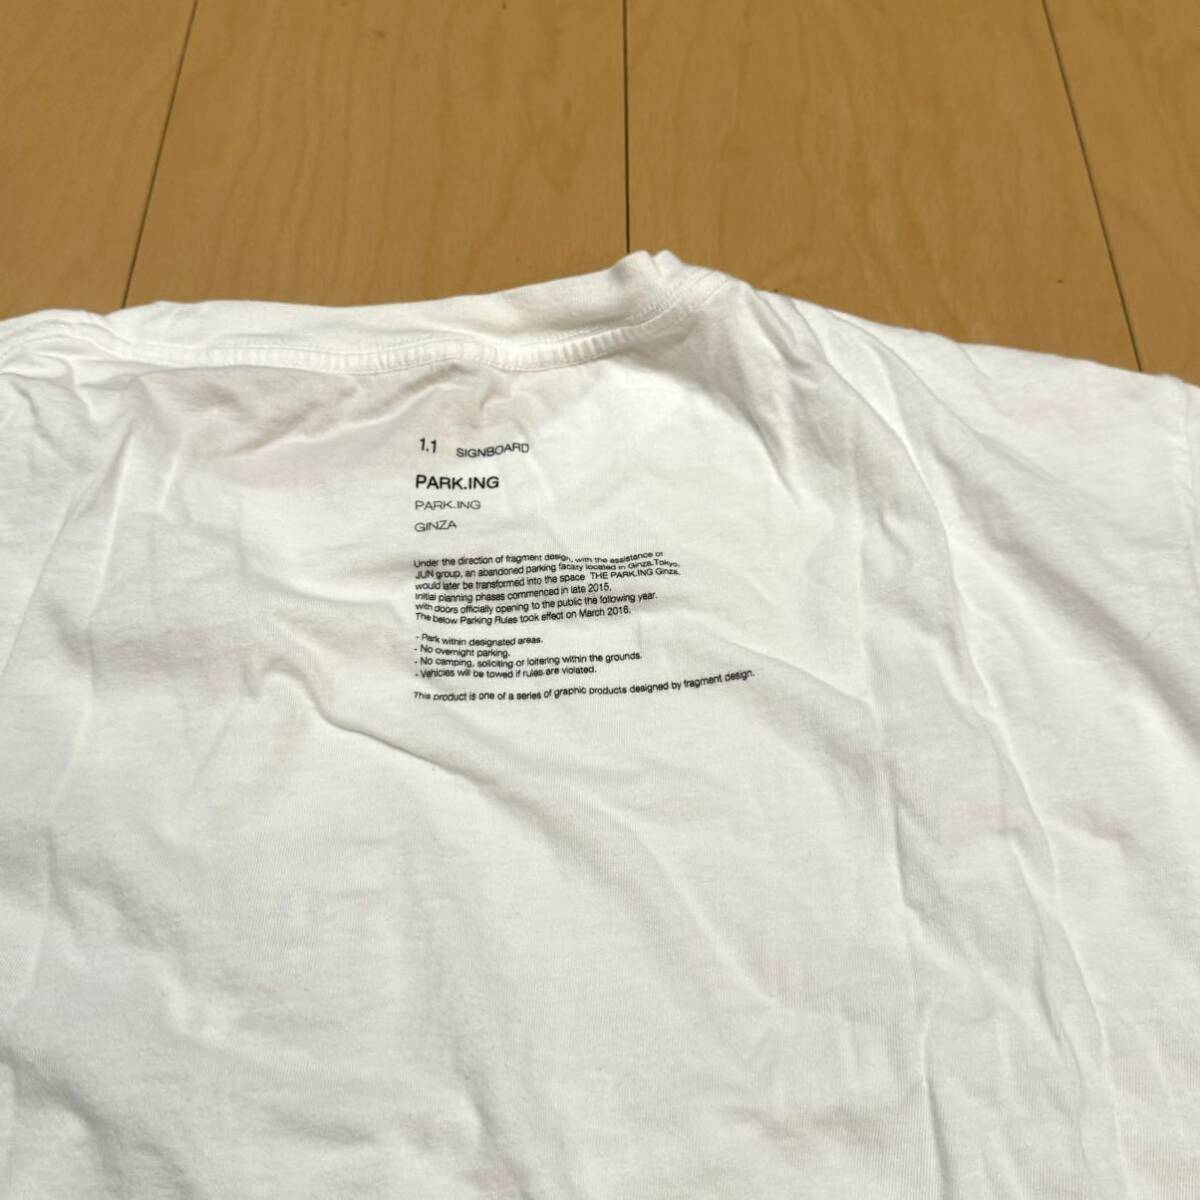 激レア! 藤原ヒロシプロデュース THE PARKING GINZA限定 ボックスロゴTシャツ ホワイト 美品格安!_画像4